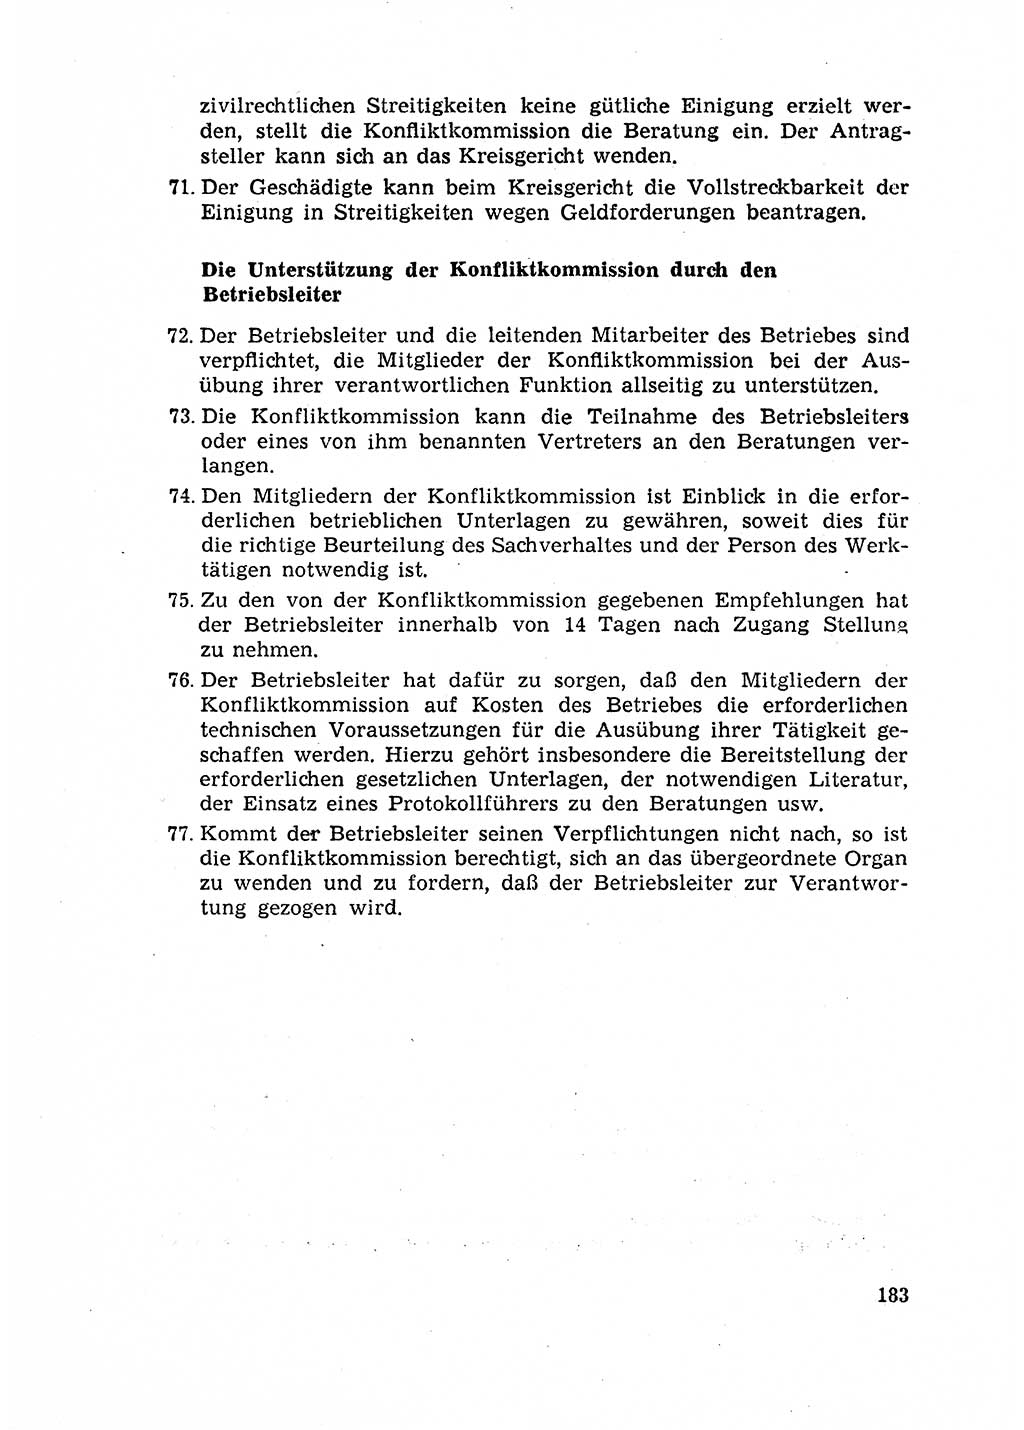 Rechtspflegeerlaß [Deutsche Demokratische Republik (DDR)] 1963, Seite 183 (R.-Pfl.-Erl. DDR 1963, S. 183)